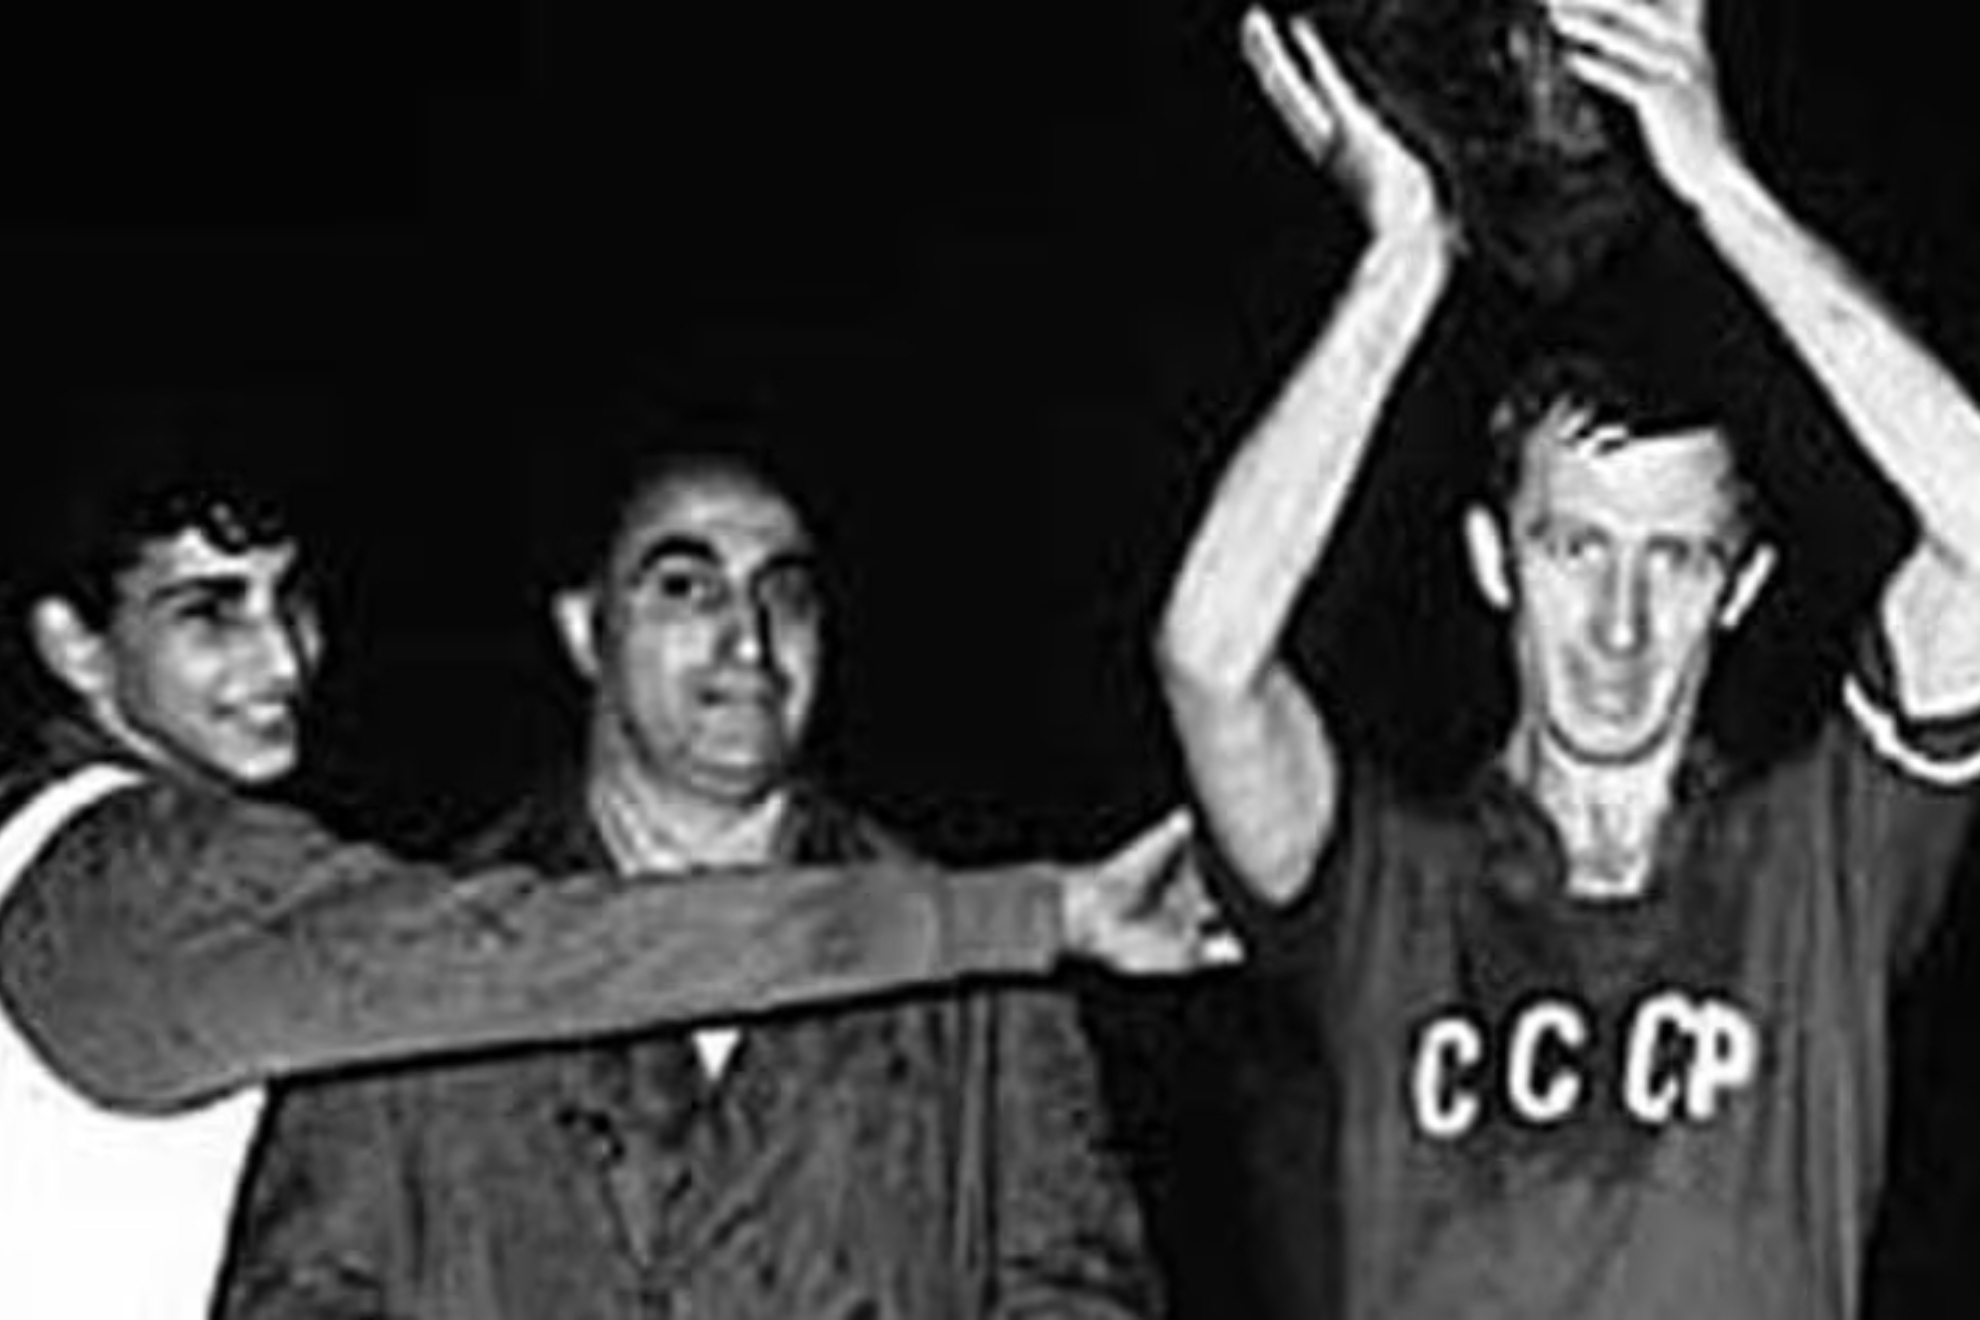 Igor Netto, jugador de la Uni�n Sovi�tica, levanta el trofeo despu�s de ganar la final en 1960.